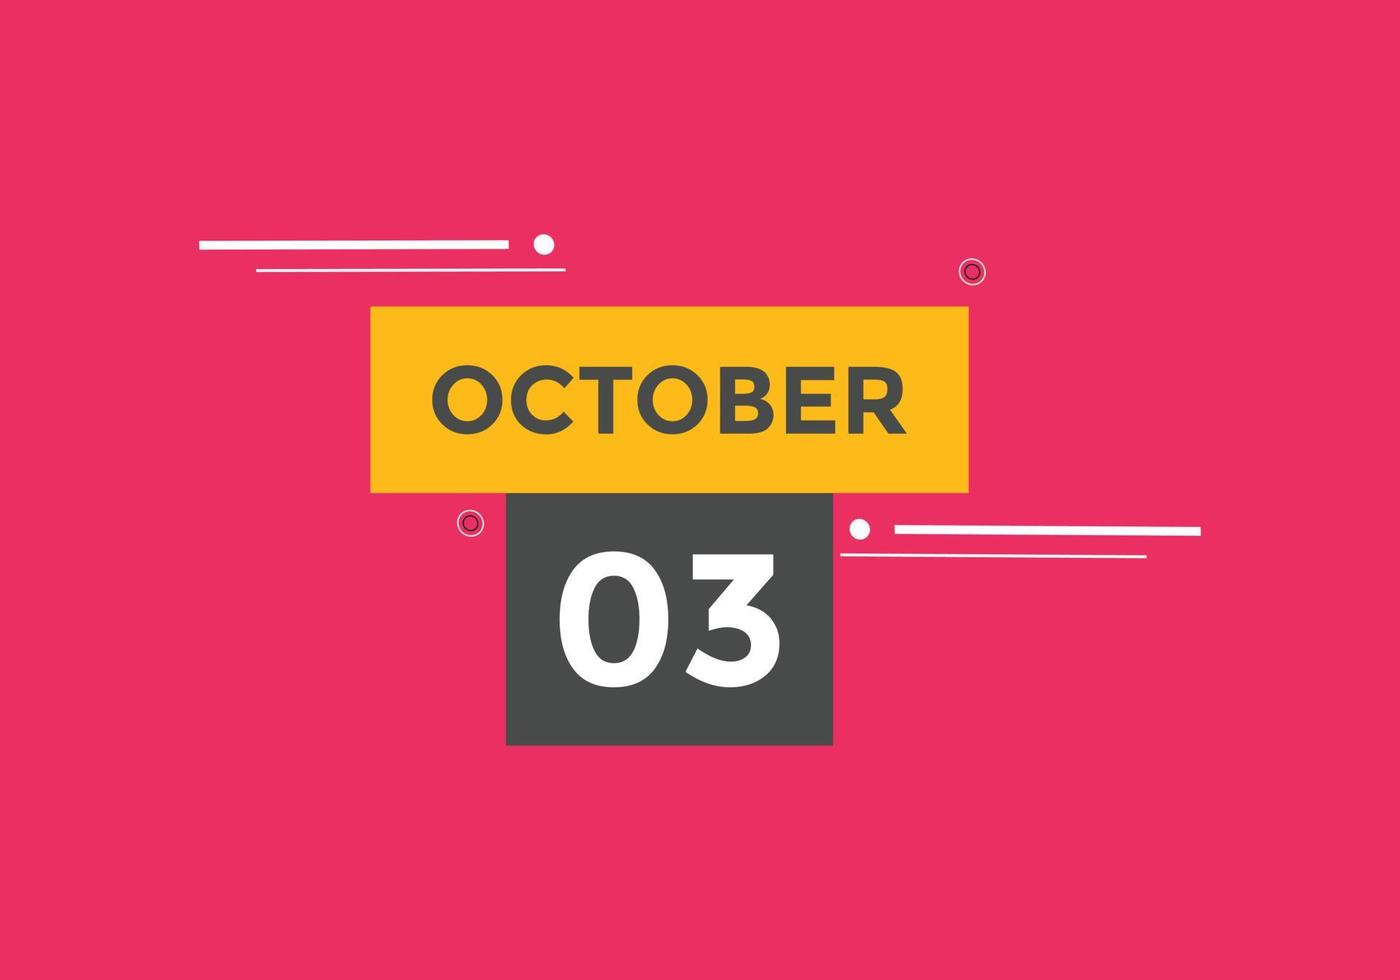 oktober 3 kalender herinnering. 3e oktober dagelijks kalender icoon sjabloon. kalender 3e oktober icoon ontwerp sjabloon. vector illustratie